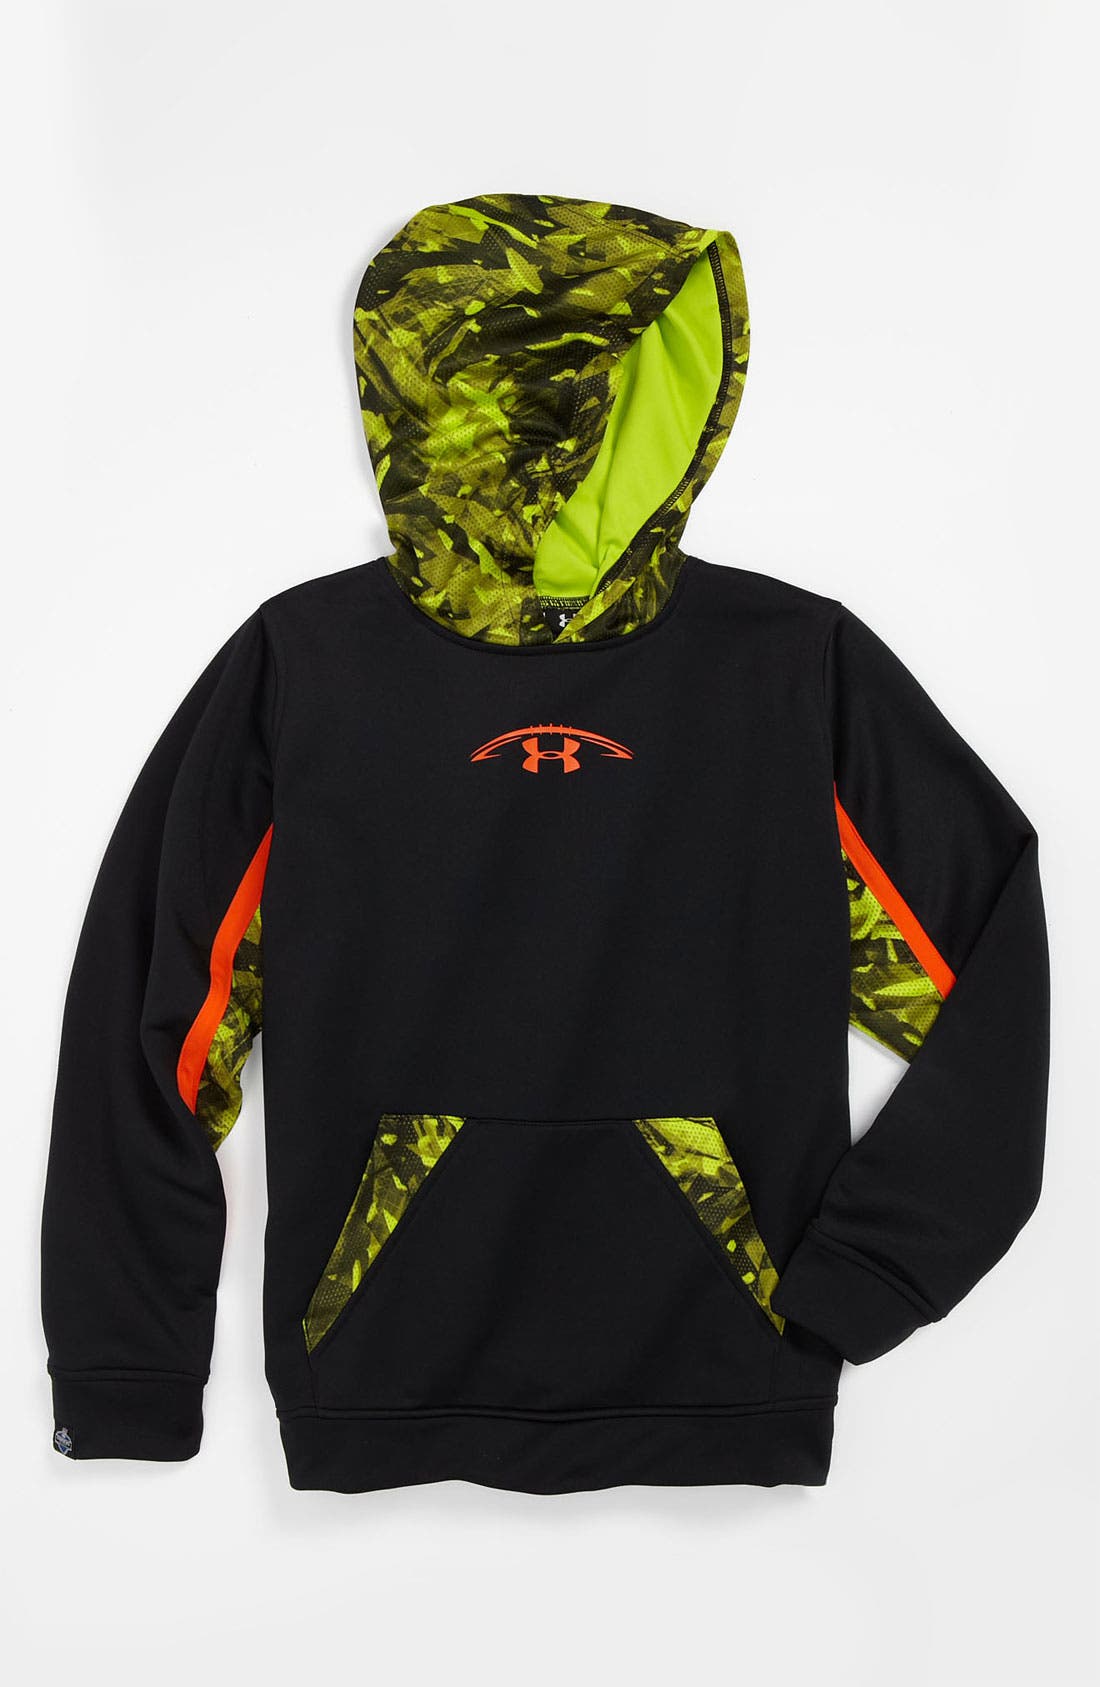 nfl combine hoodie